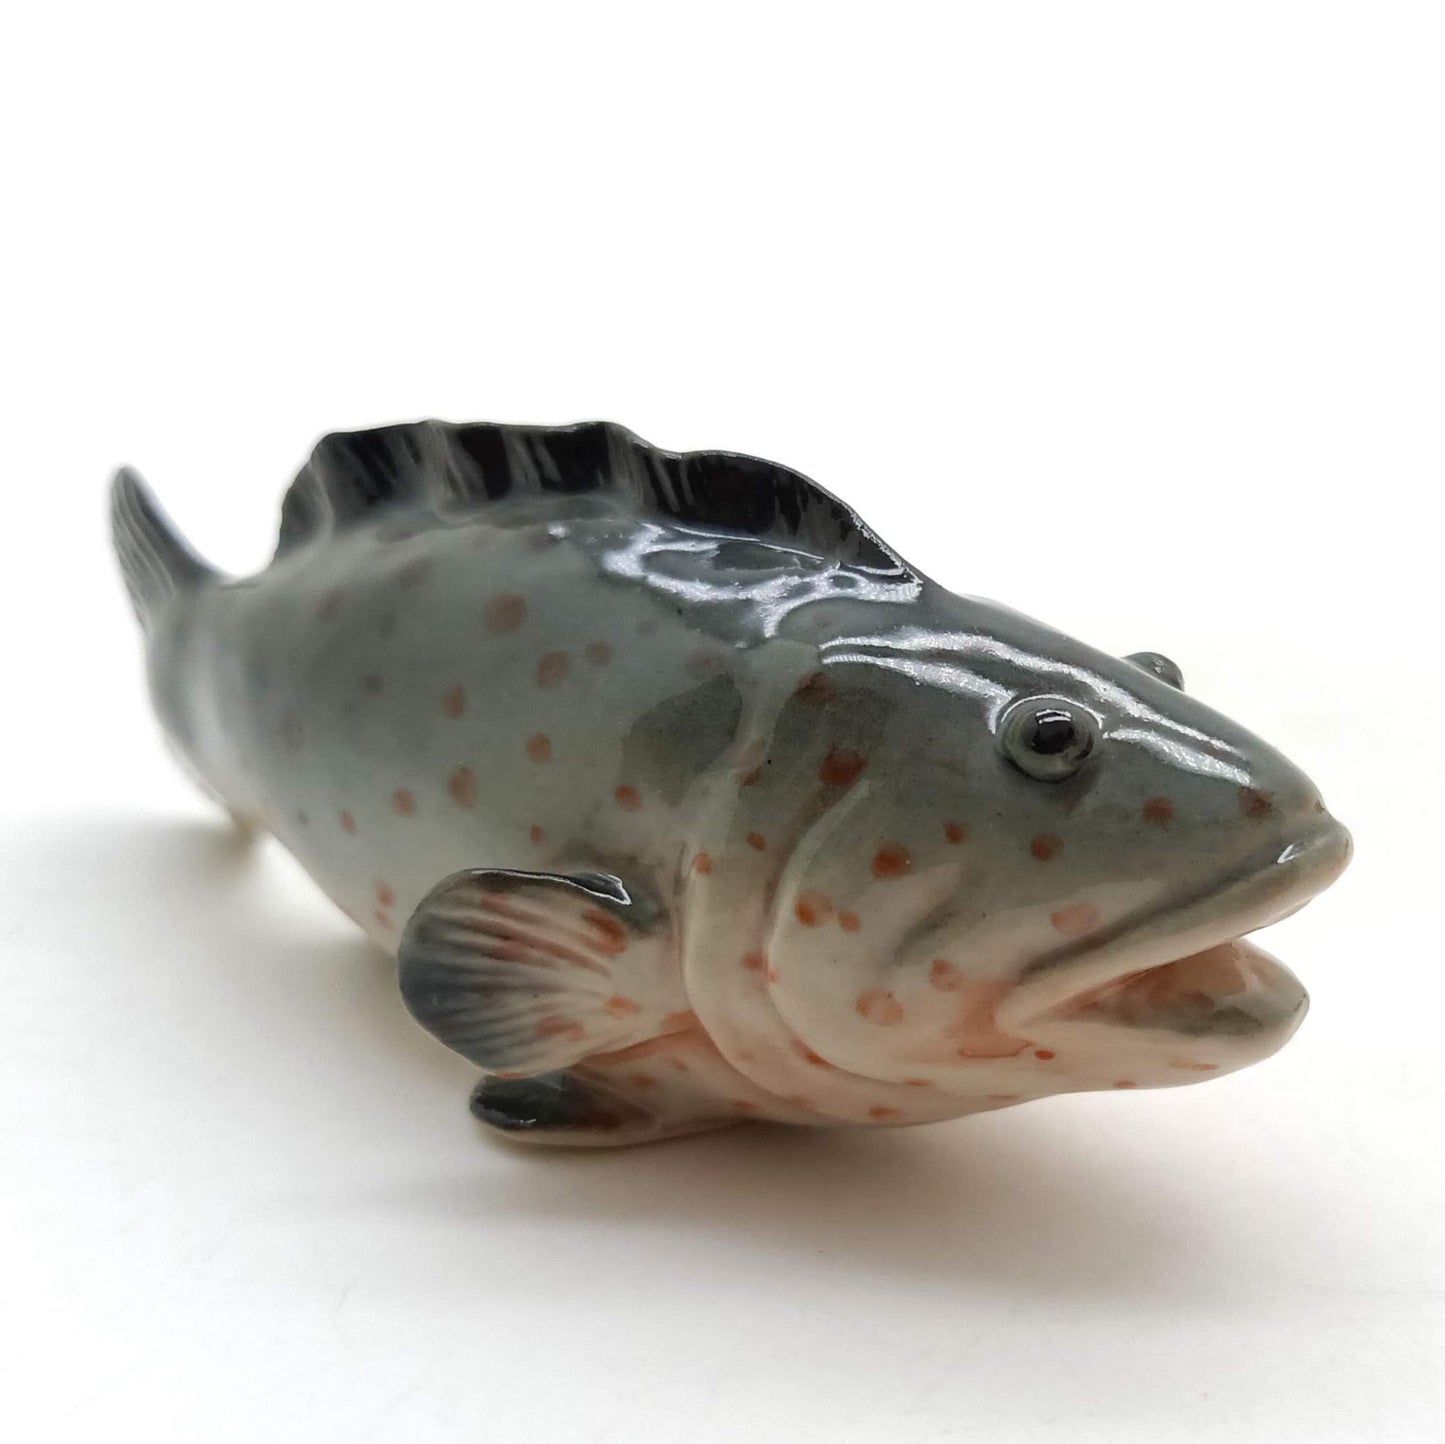 3 Grouper Fish Ceramic Figurines Miniature Statue